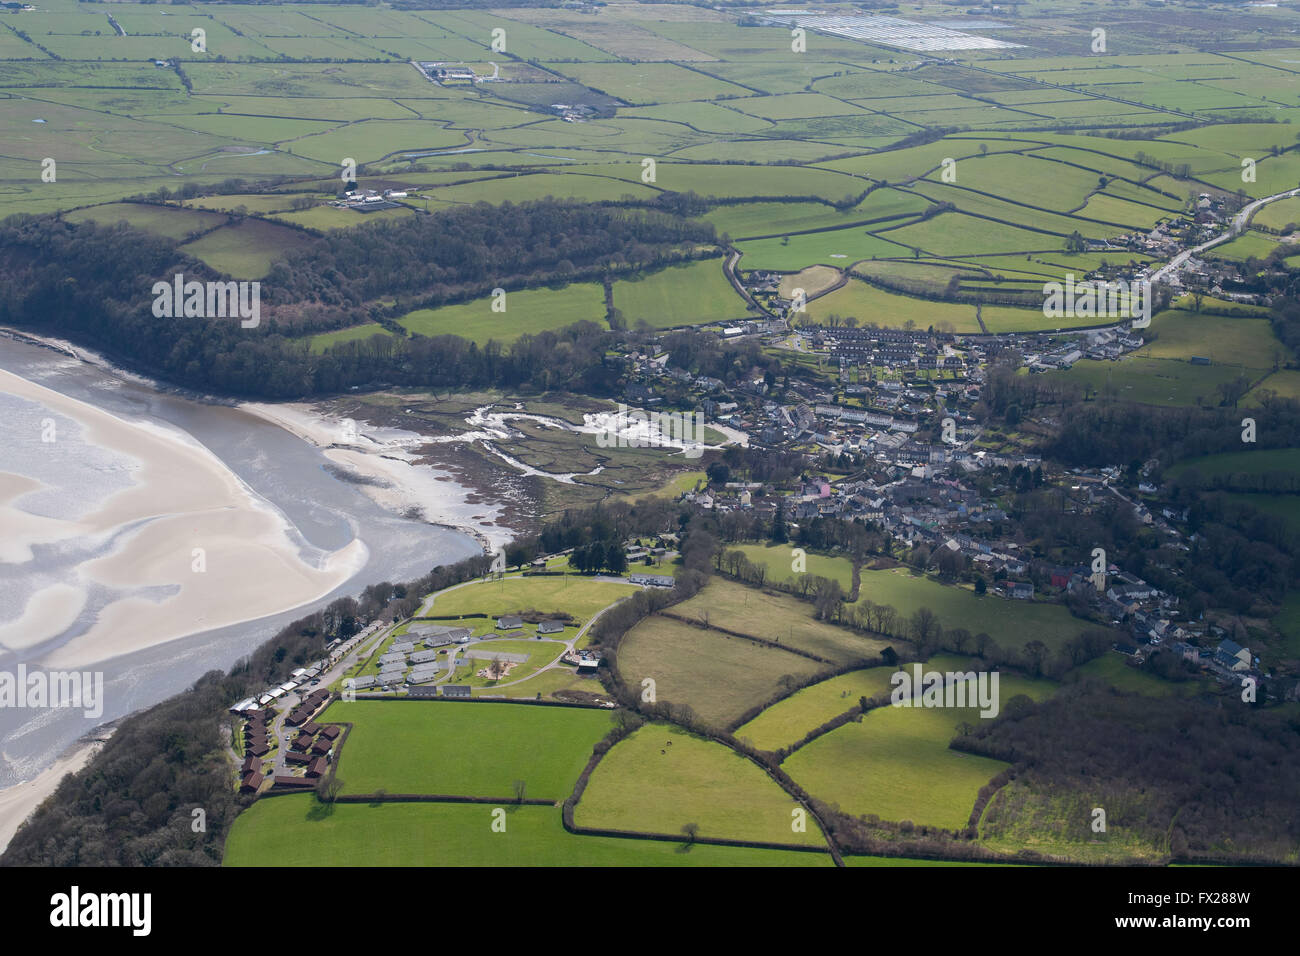 Vue aérienne de Laugharne, West Wales, sur l'estuaire de la rivière Taf. Laugharne était à la maison du poète et écrivain Dylan Thomas. Banque D'Images